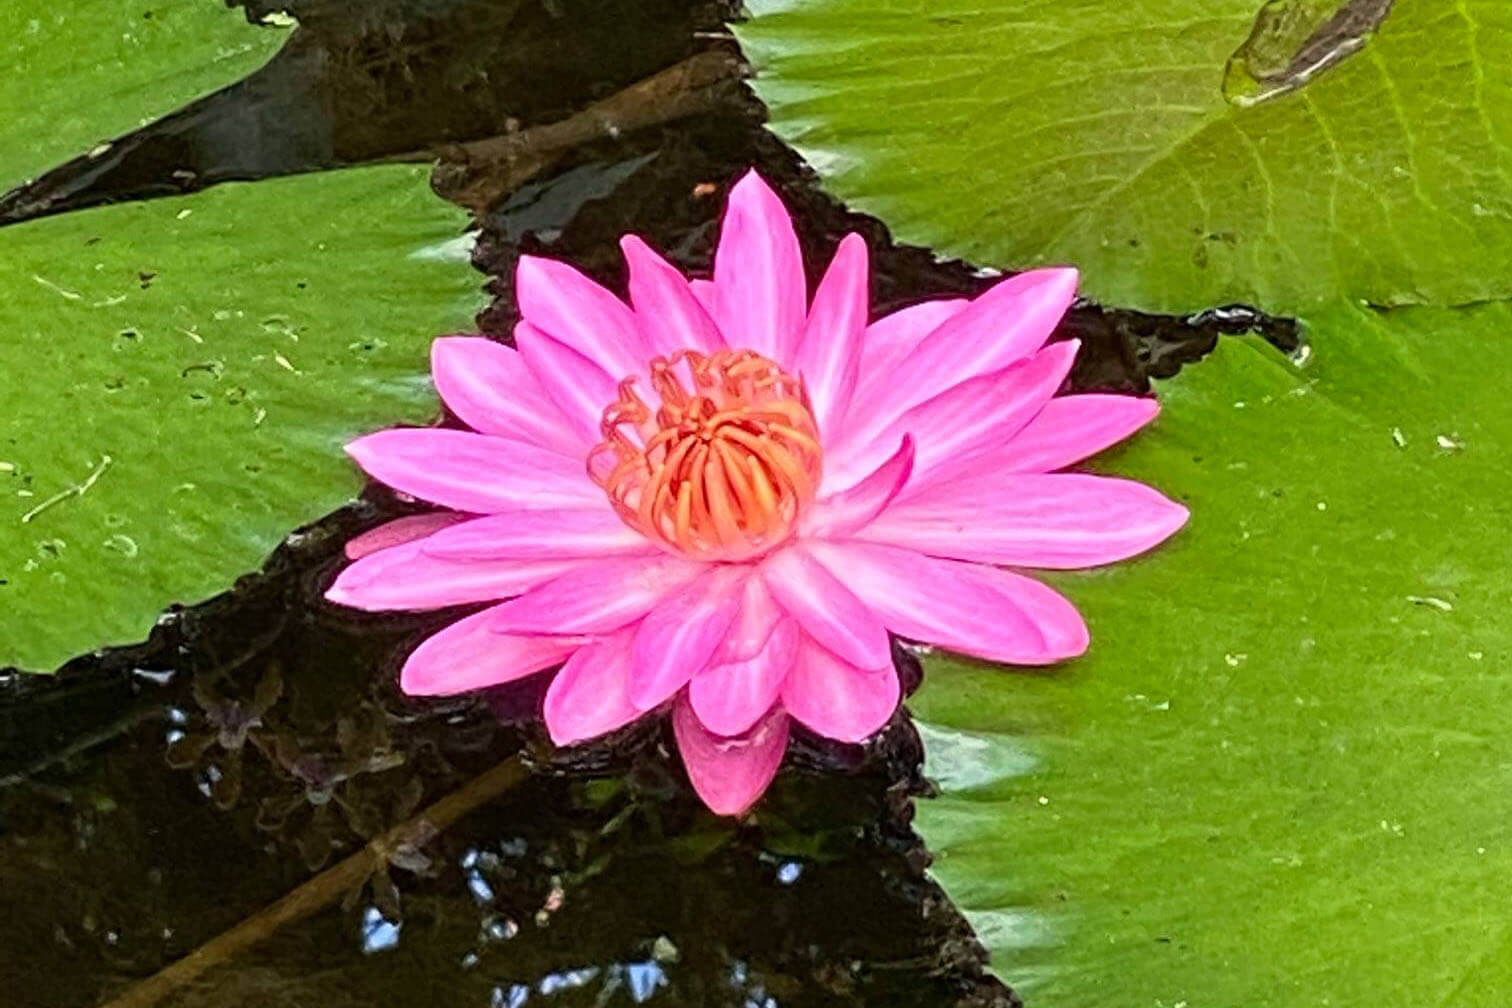 Waterlily at McKee Botanical Gardens